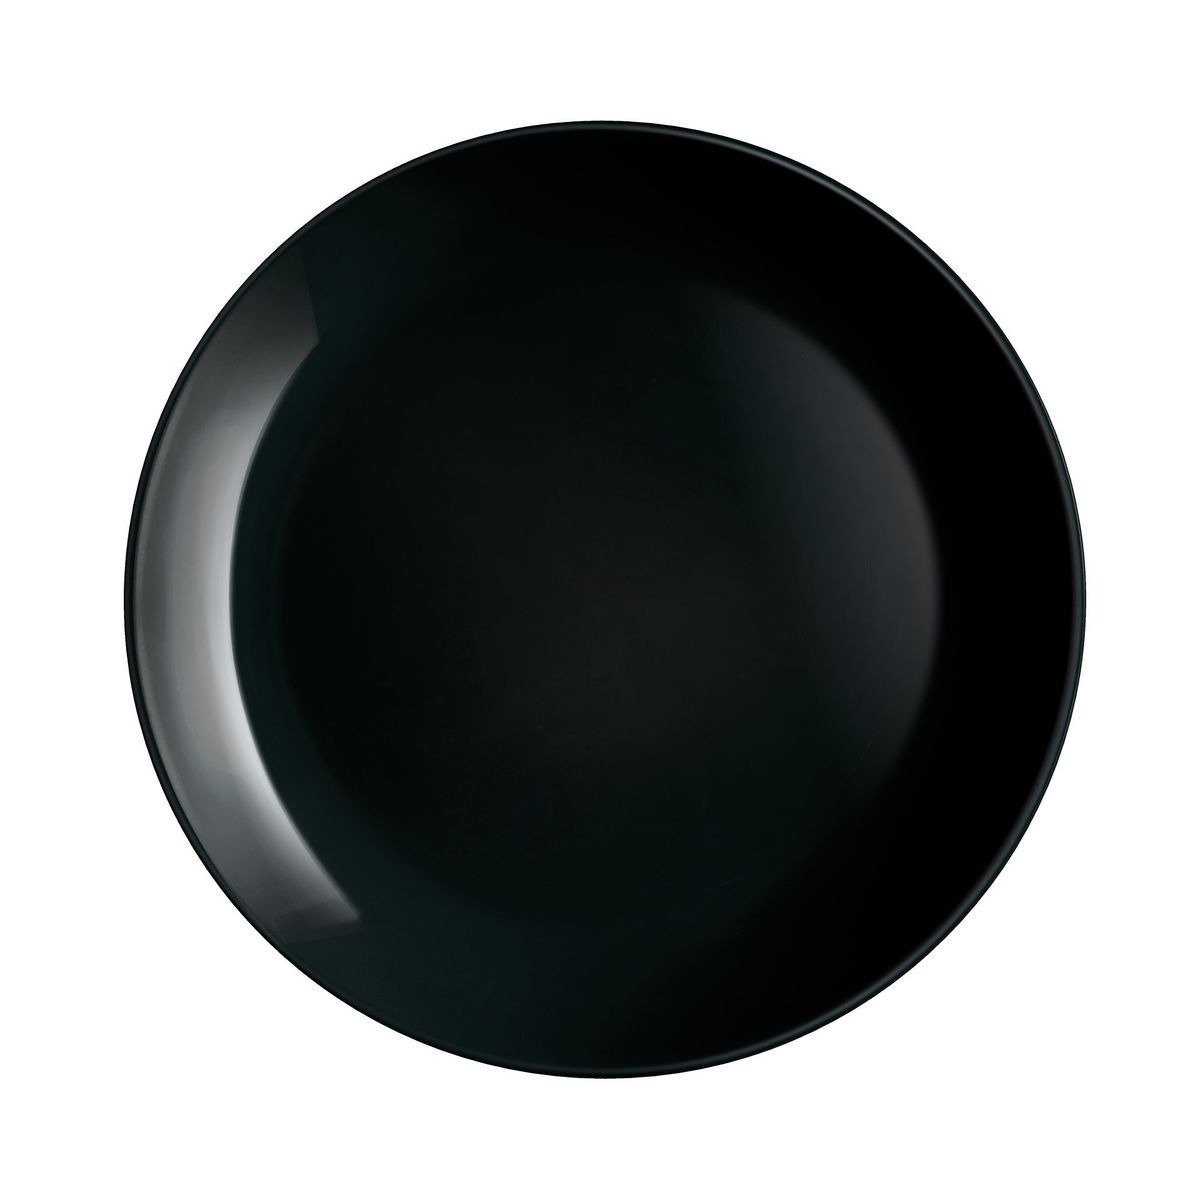 Тарелка обеденная Luminarc Diwali black 25 см